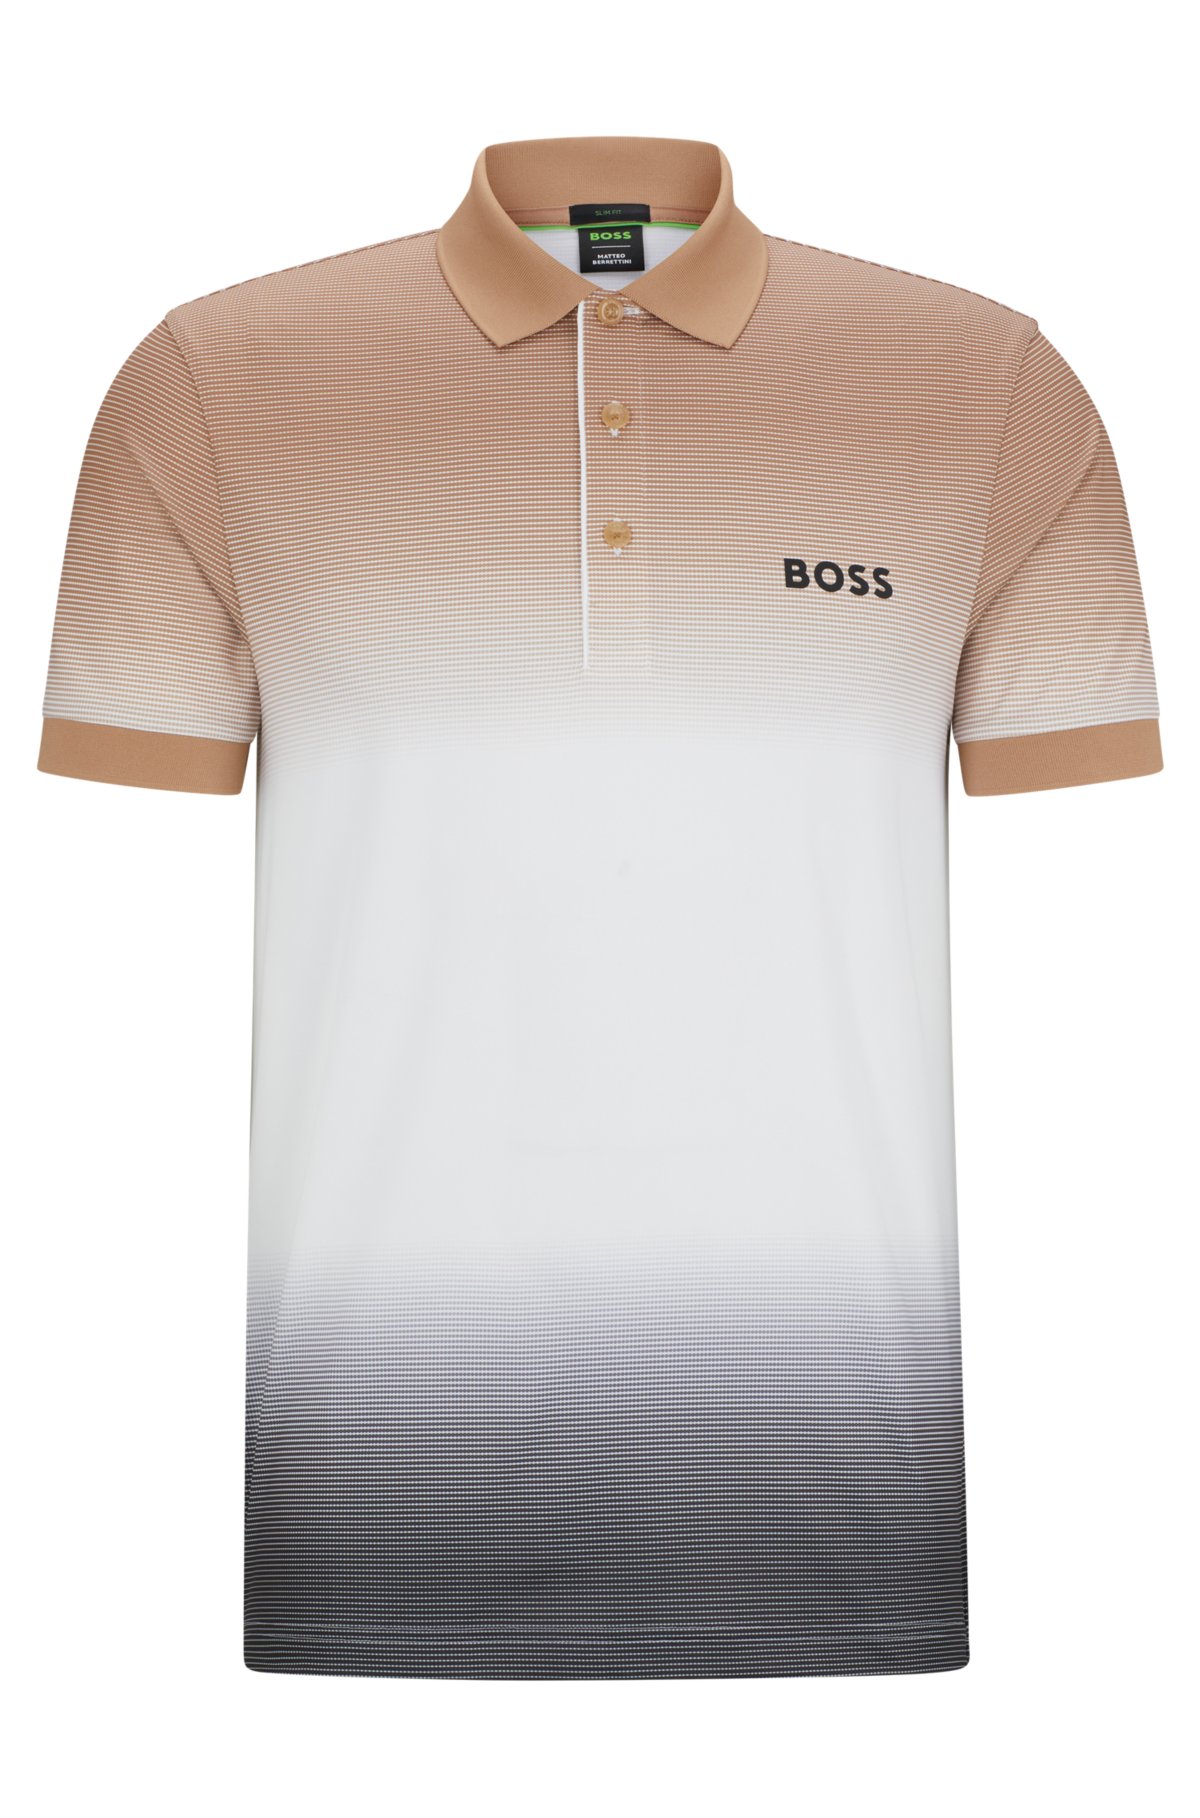 BOSS BOSS x Berrettini strech-jersey poloshirt fra BOSS herretøj med signaturstriber i degradé-mønster.